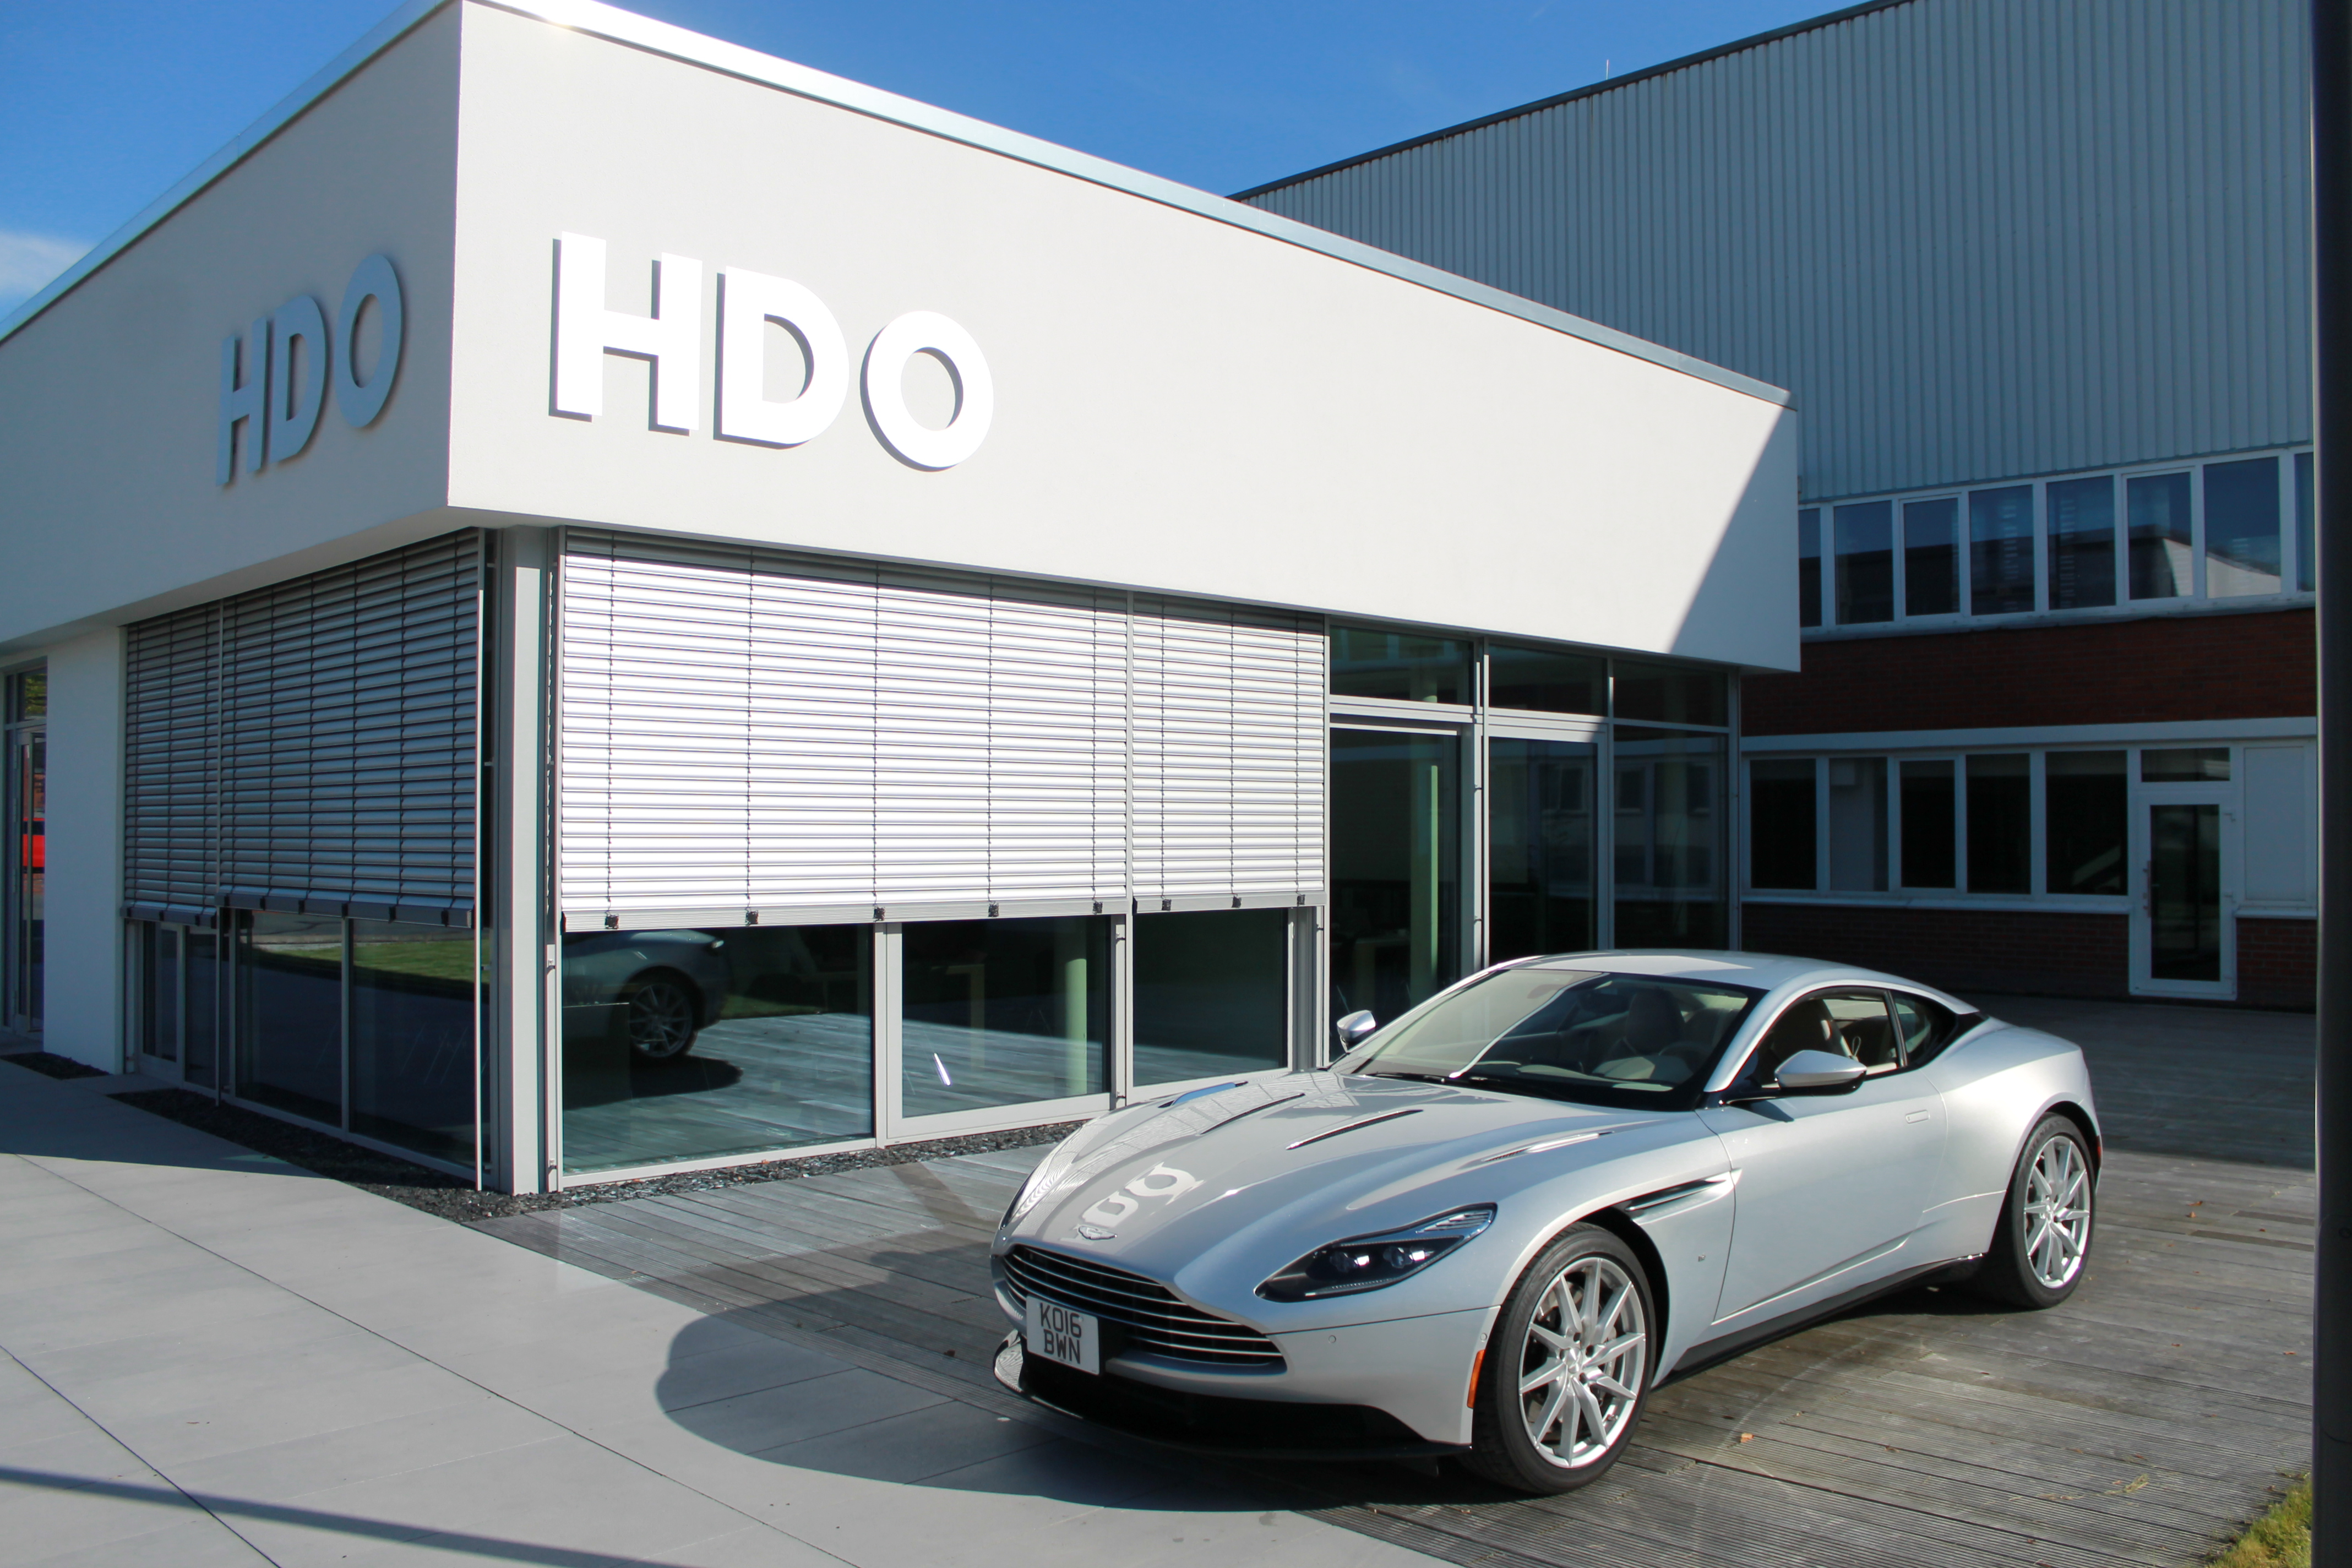 Gebäude der HDO mit einem silbernen Aston Martin davor